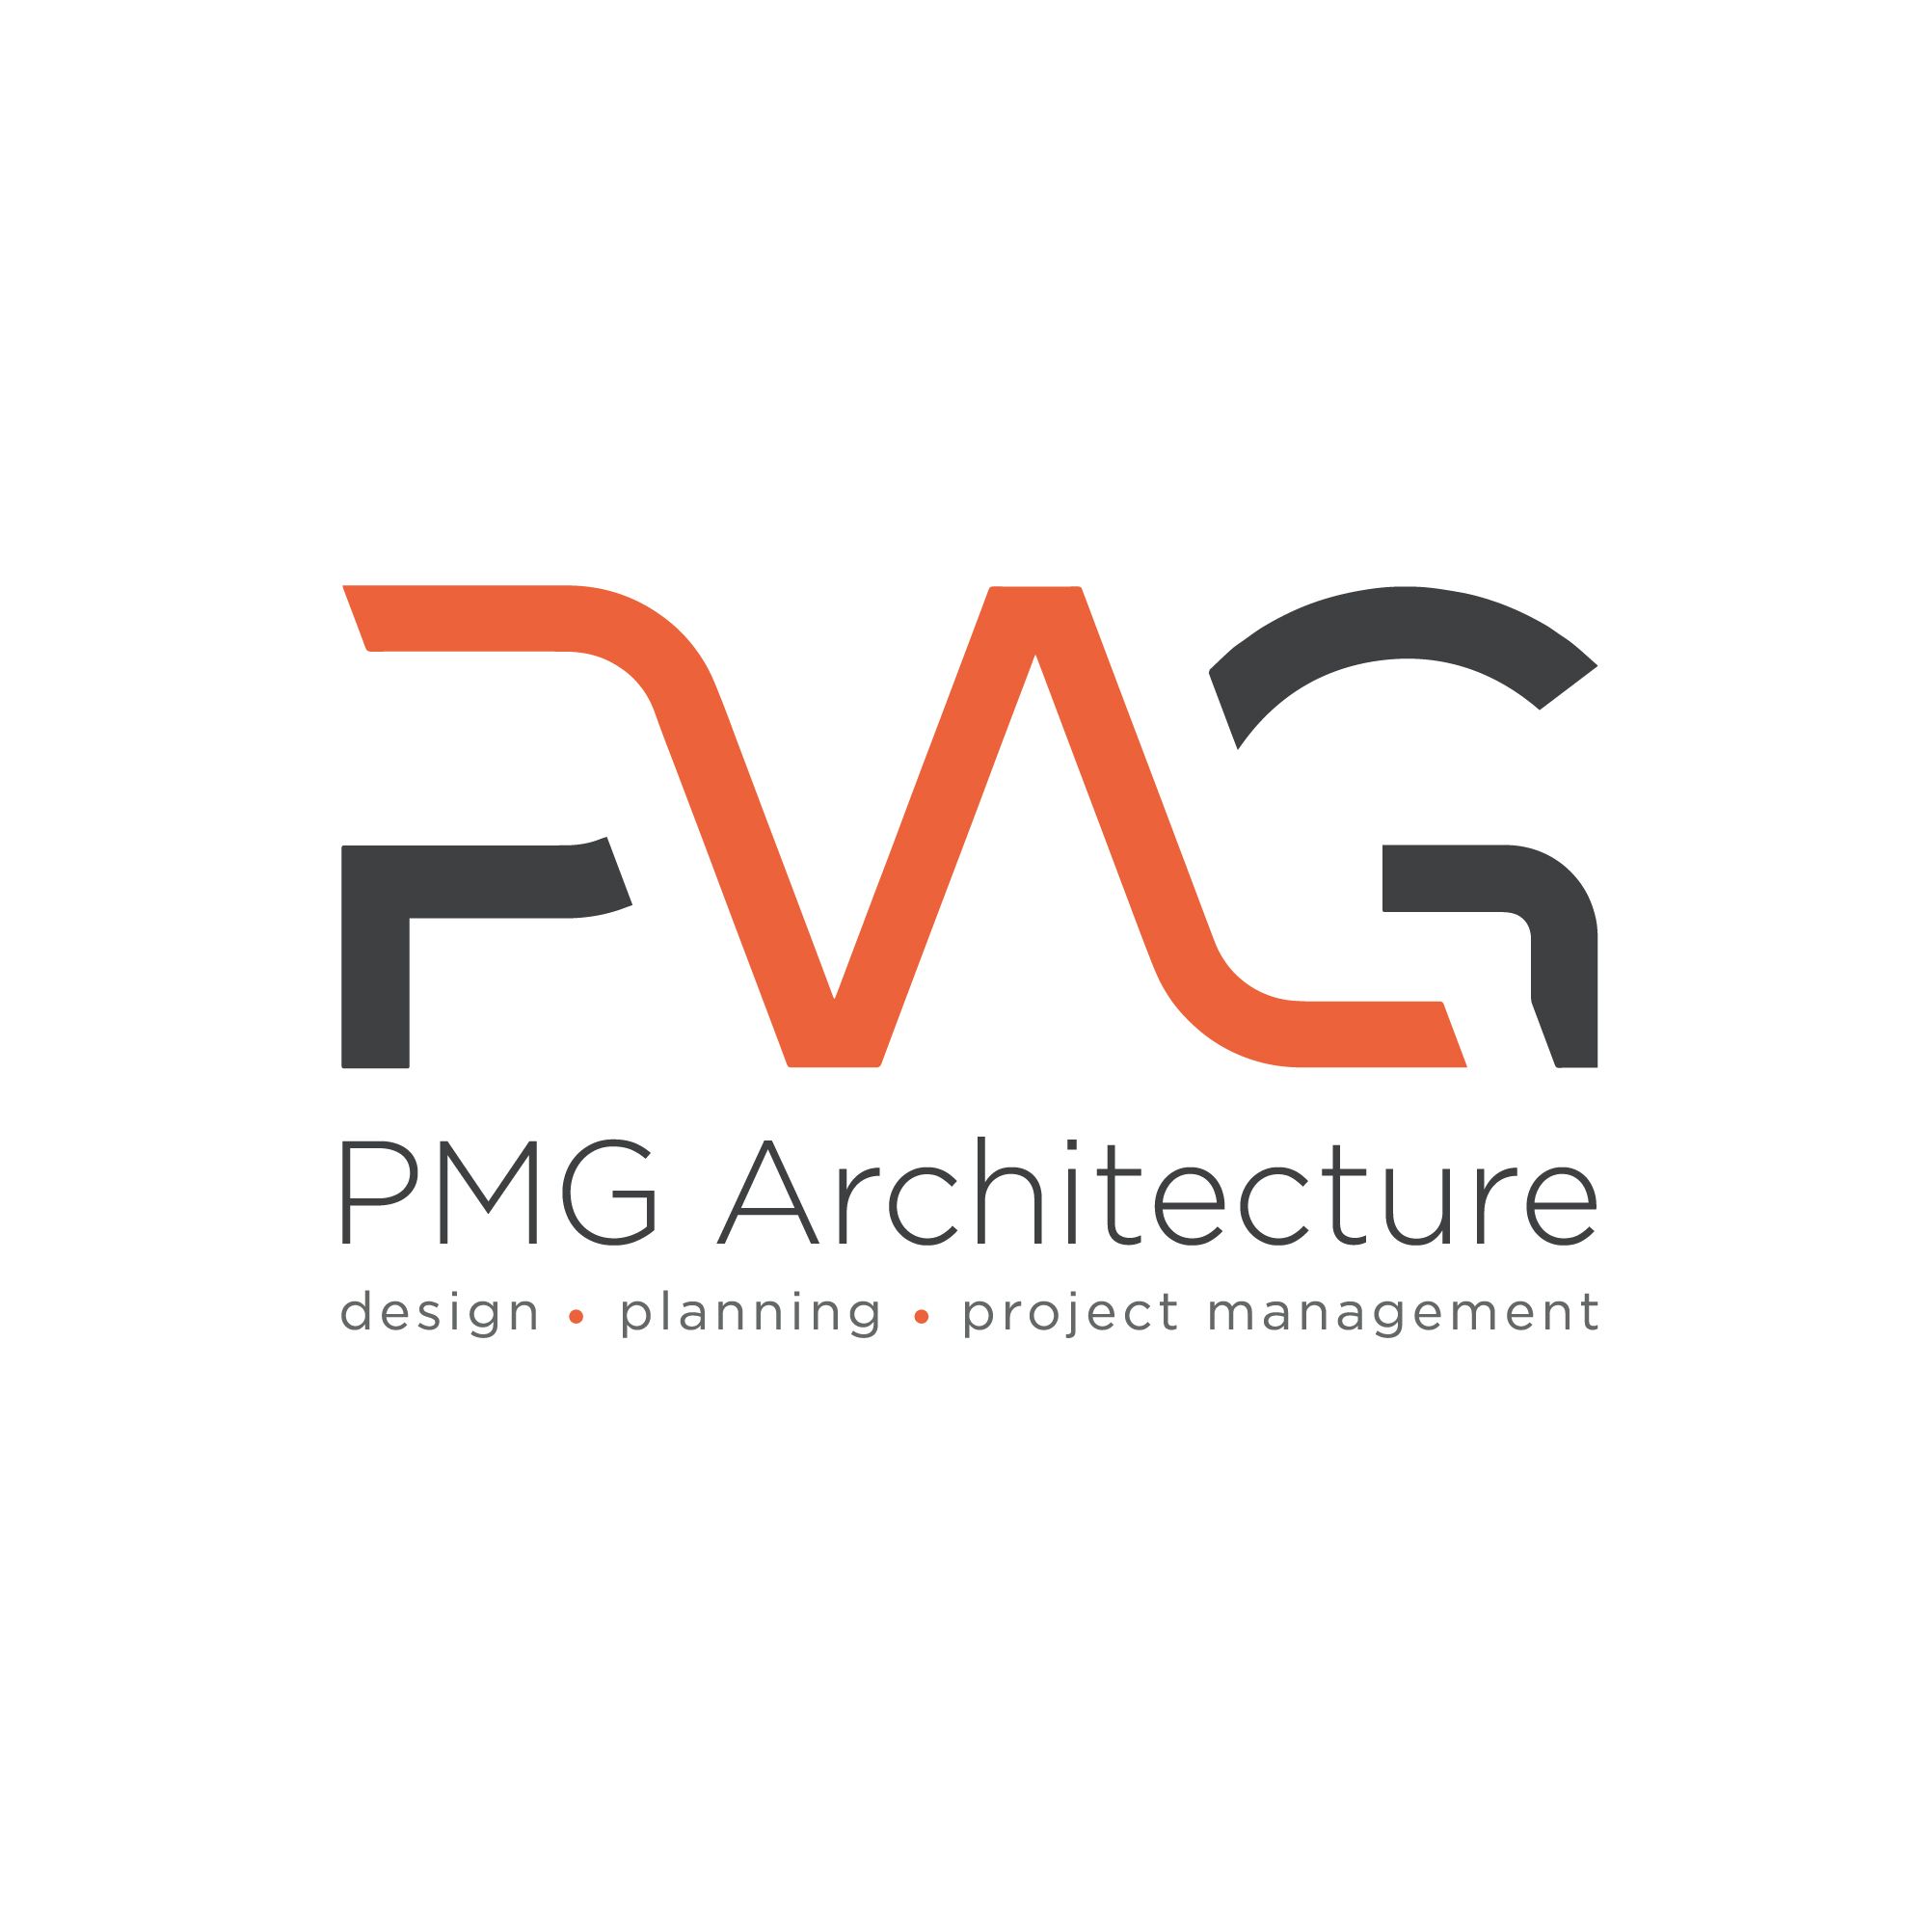 PMG Architecture